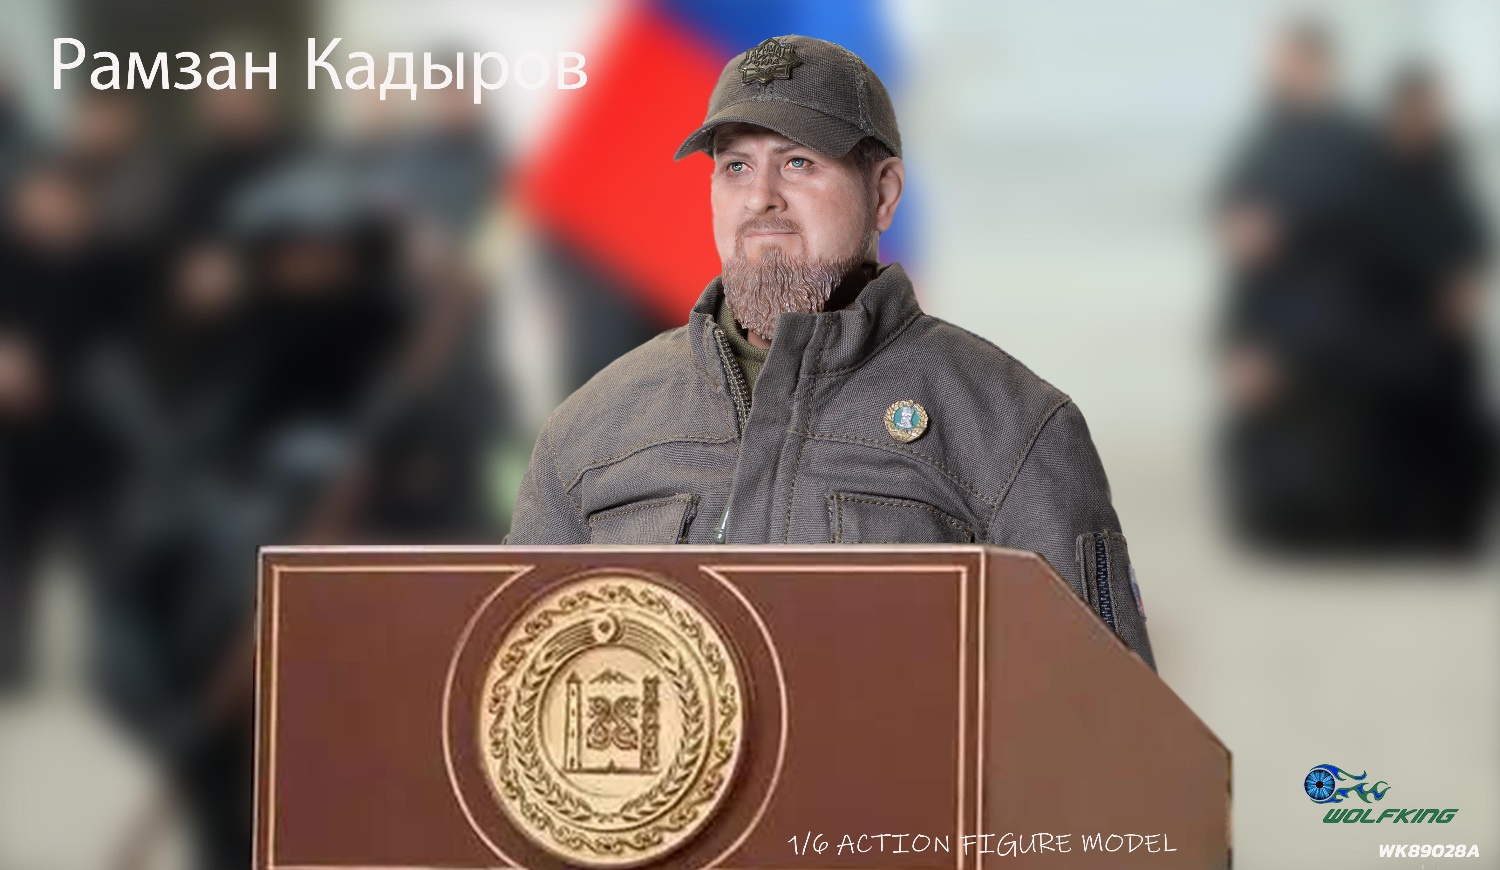 Kadyrov - President of Chechnya